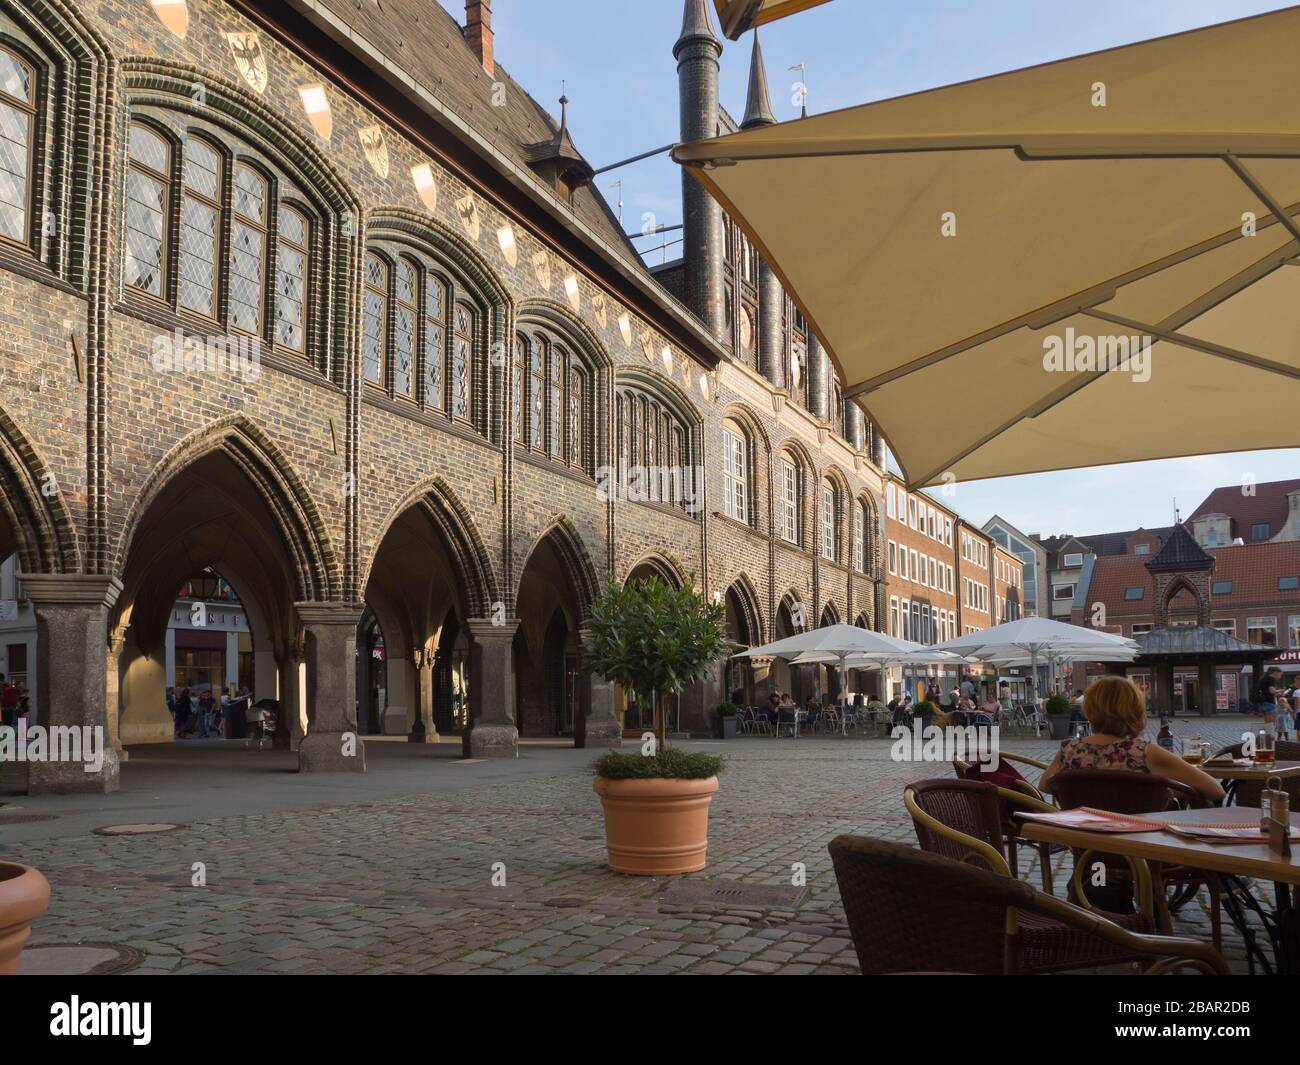 Il municipio nella città anseatica della Germania, le parti Lübeck antiche del 1250, la facciata, il cortile, le guglie e il ristorante Ratskeller Foto Stock